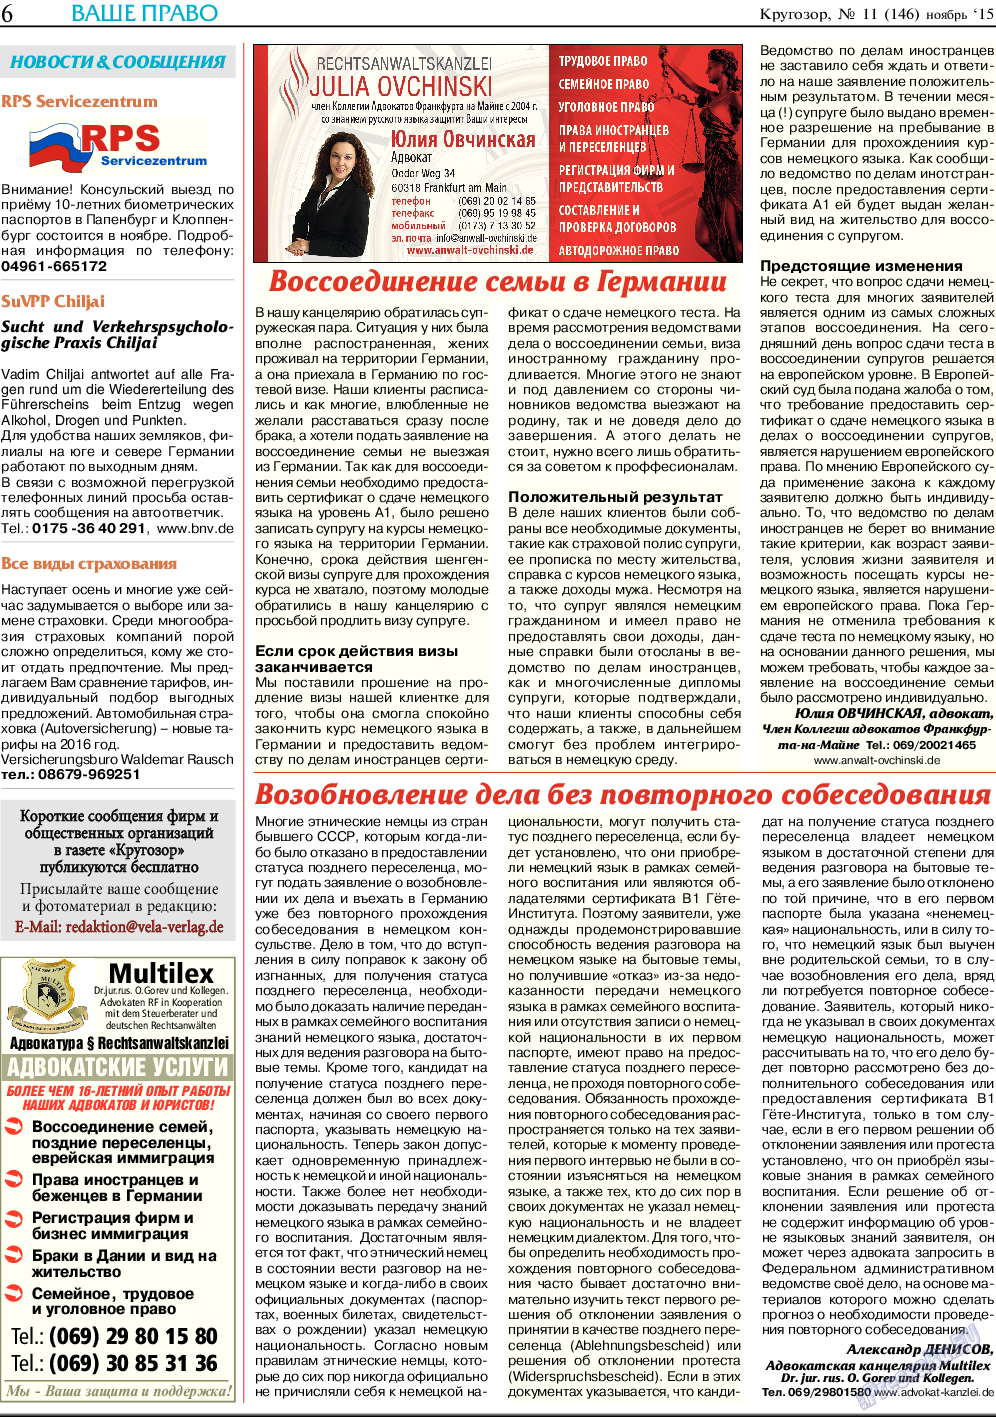 Кругозор, газета. 2015 №11 стр.6